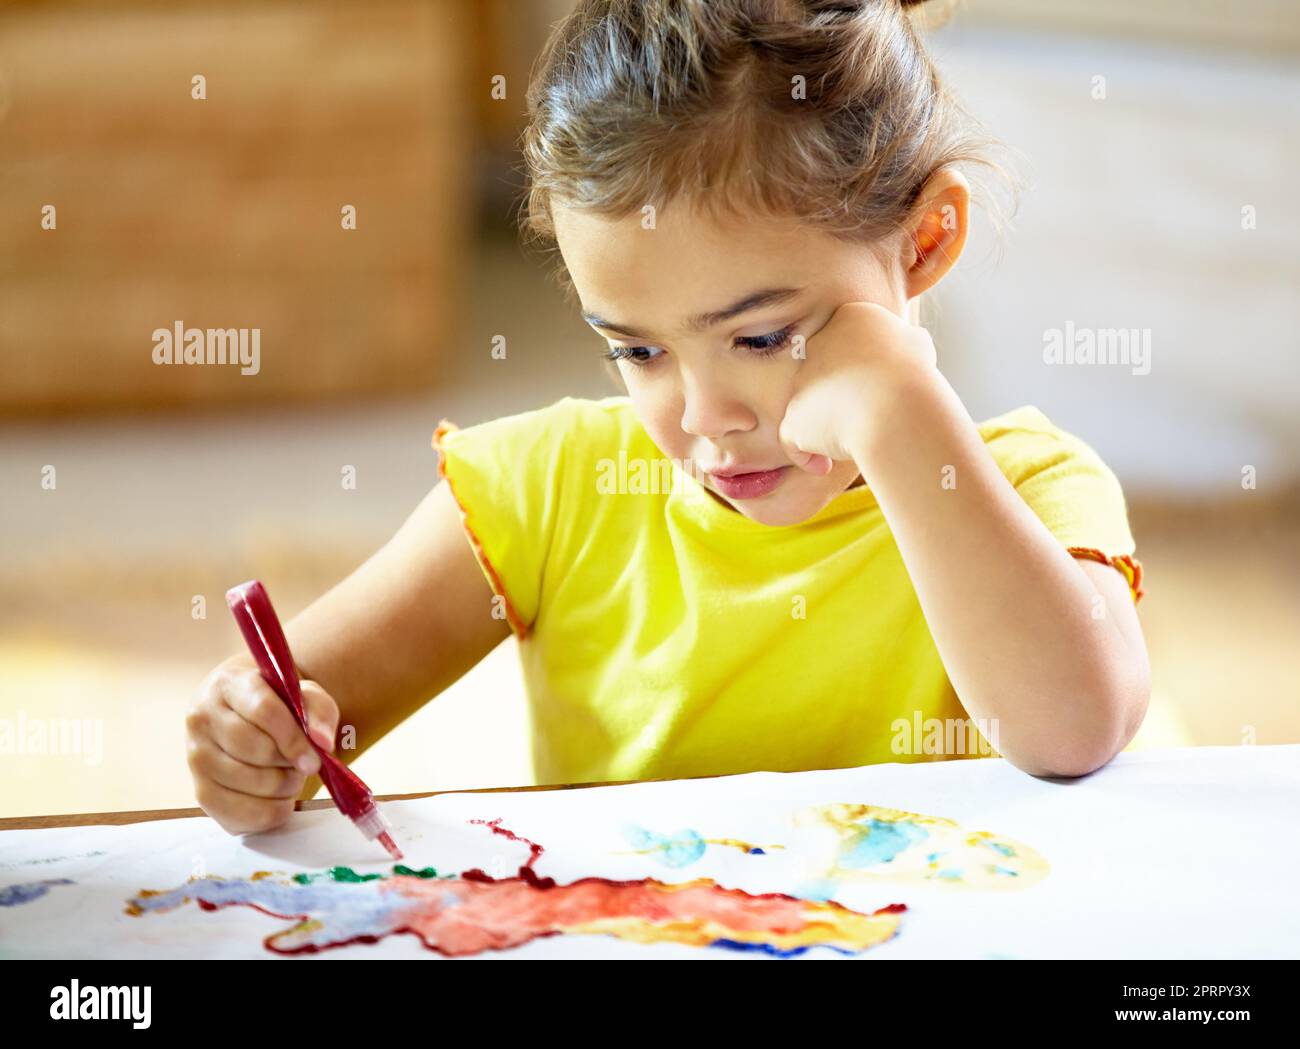 Theres nessun limite ad un'immaginazione dei childs. Una ragazza piccola adorabile che fa un mess mentre dipinge. Foto Stock